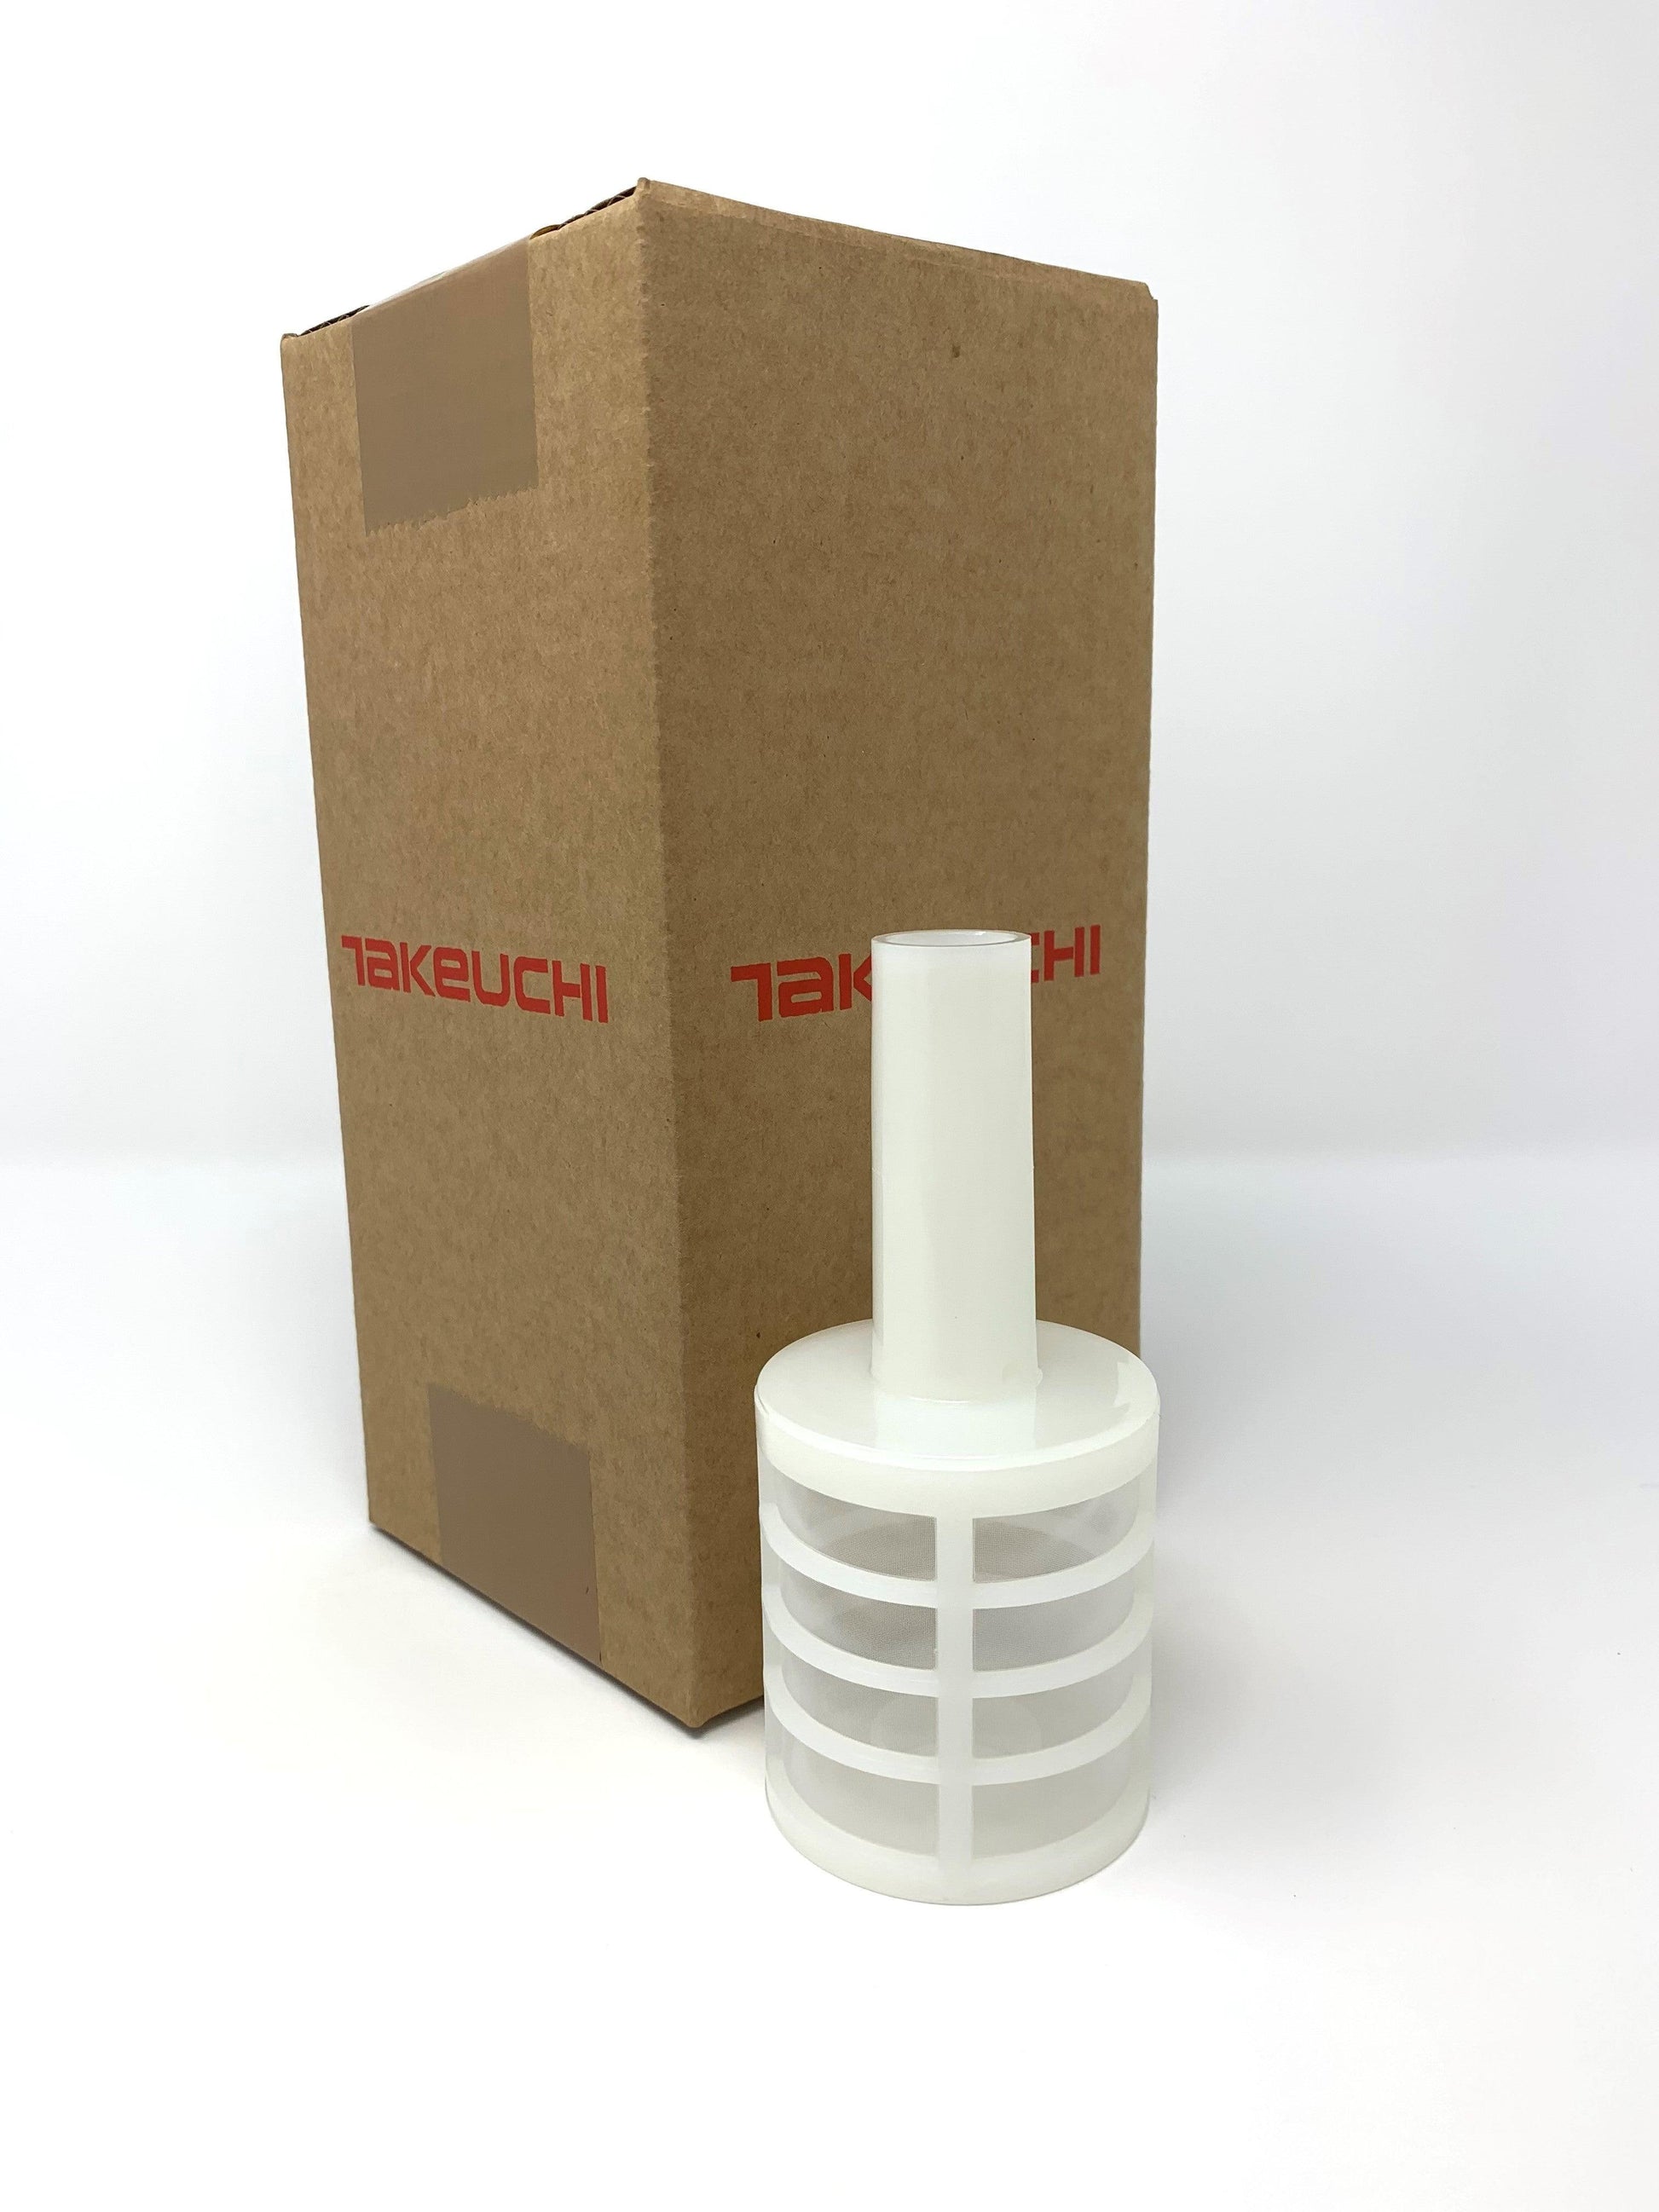 Takeuchi Water Separator Filter - Part Number: Y119802-55710